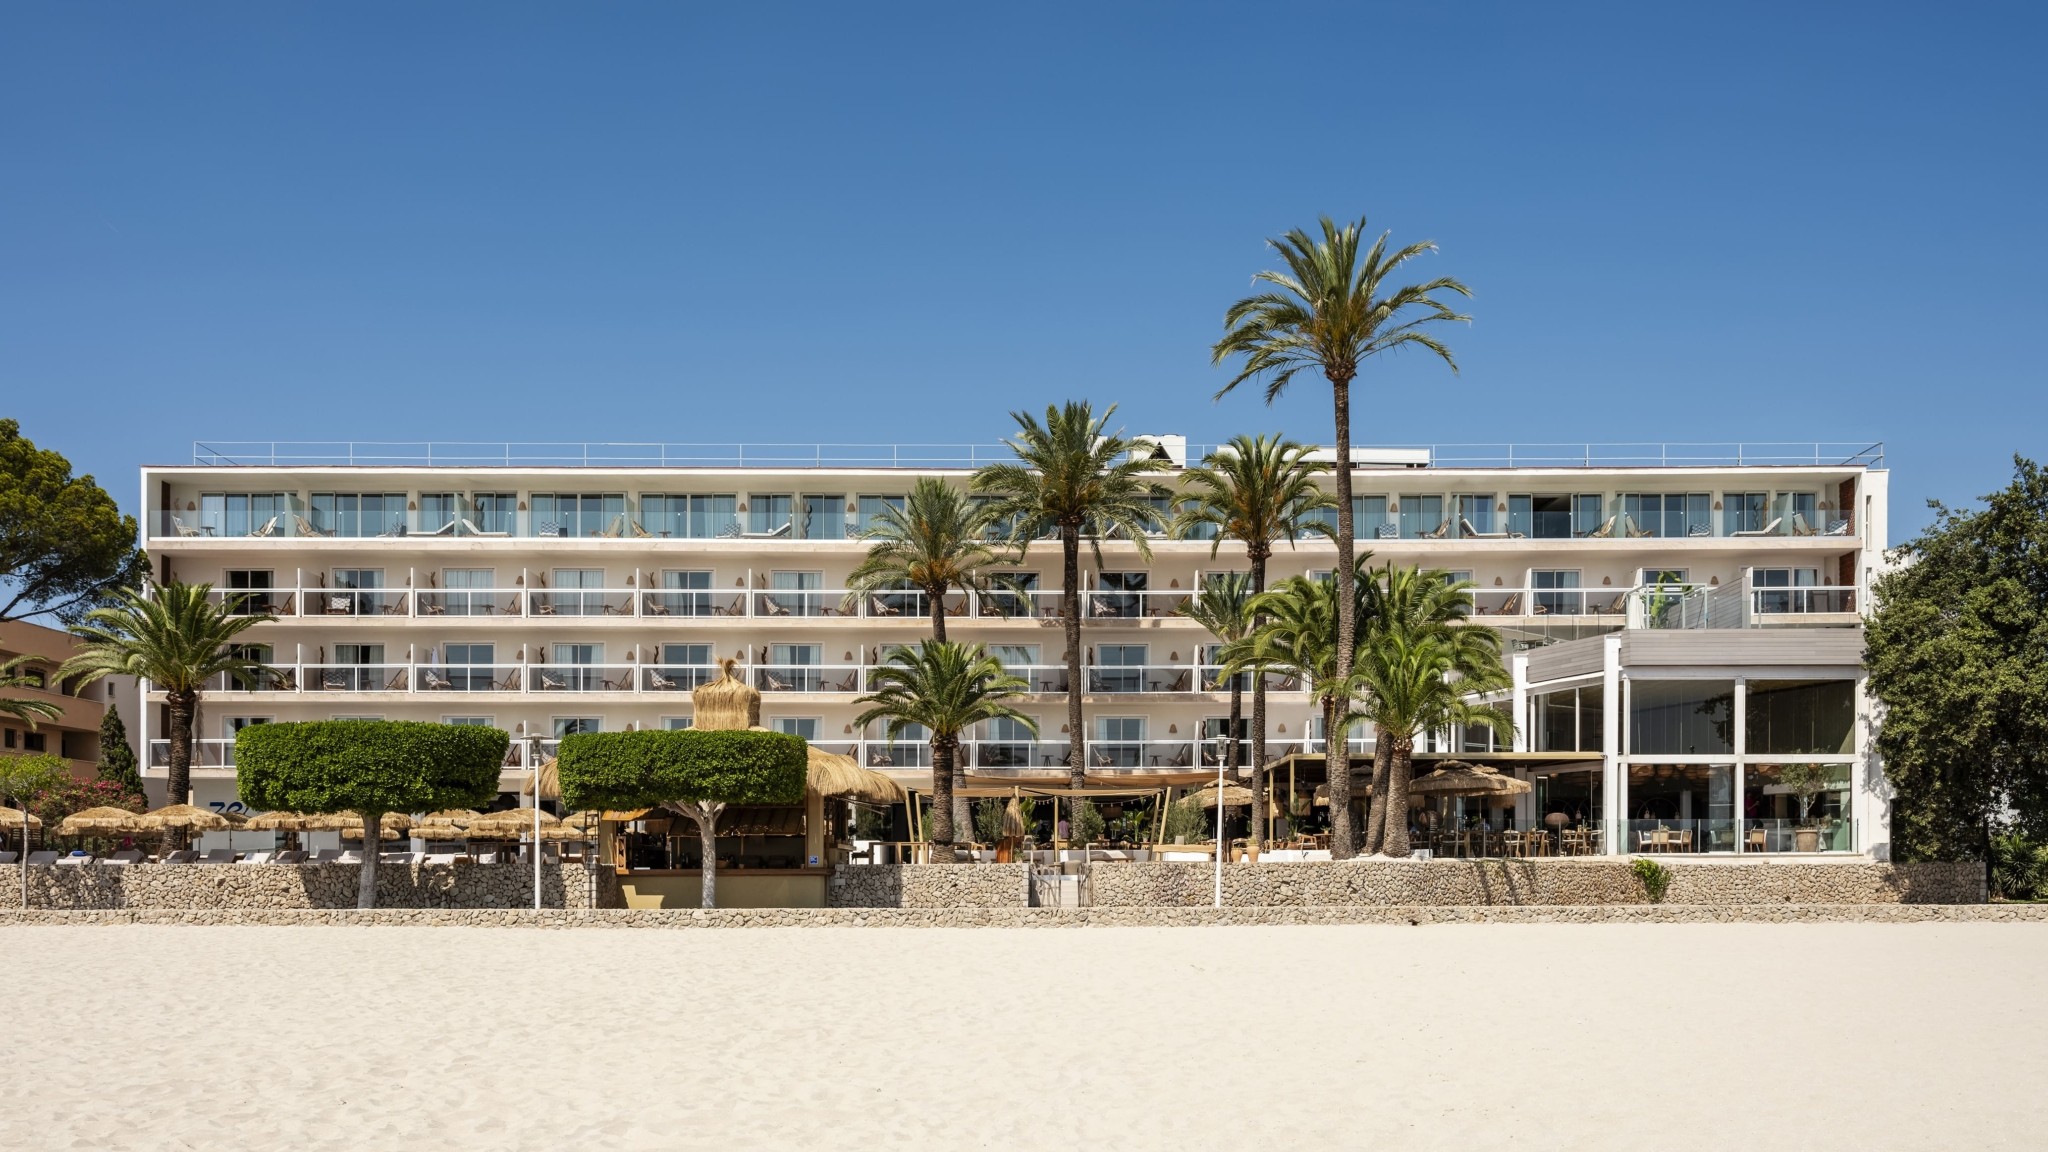 Επίσημα εγκαίνια για το ZEL Mallorca – Η νέα συνεργασία του Ραφαέλ Ναδάλ με τη Meliá Hotels International (pics)